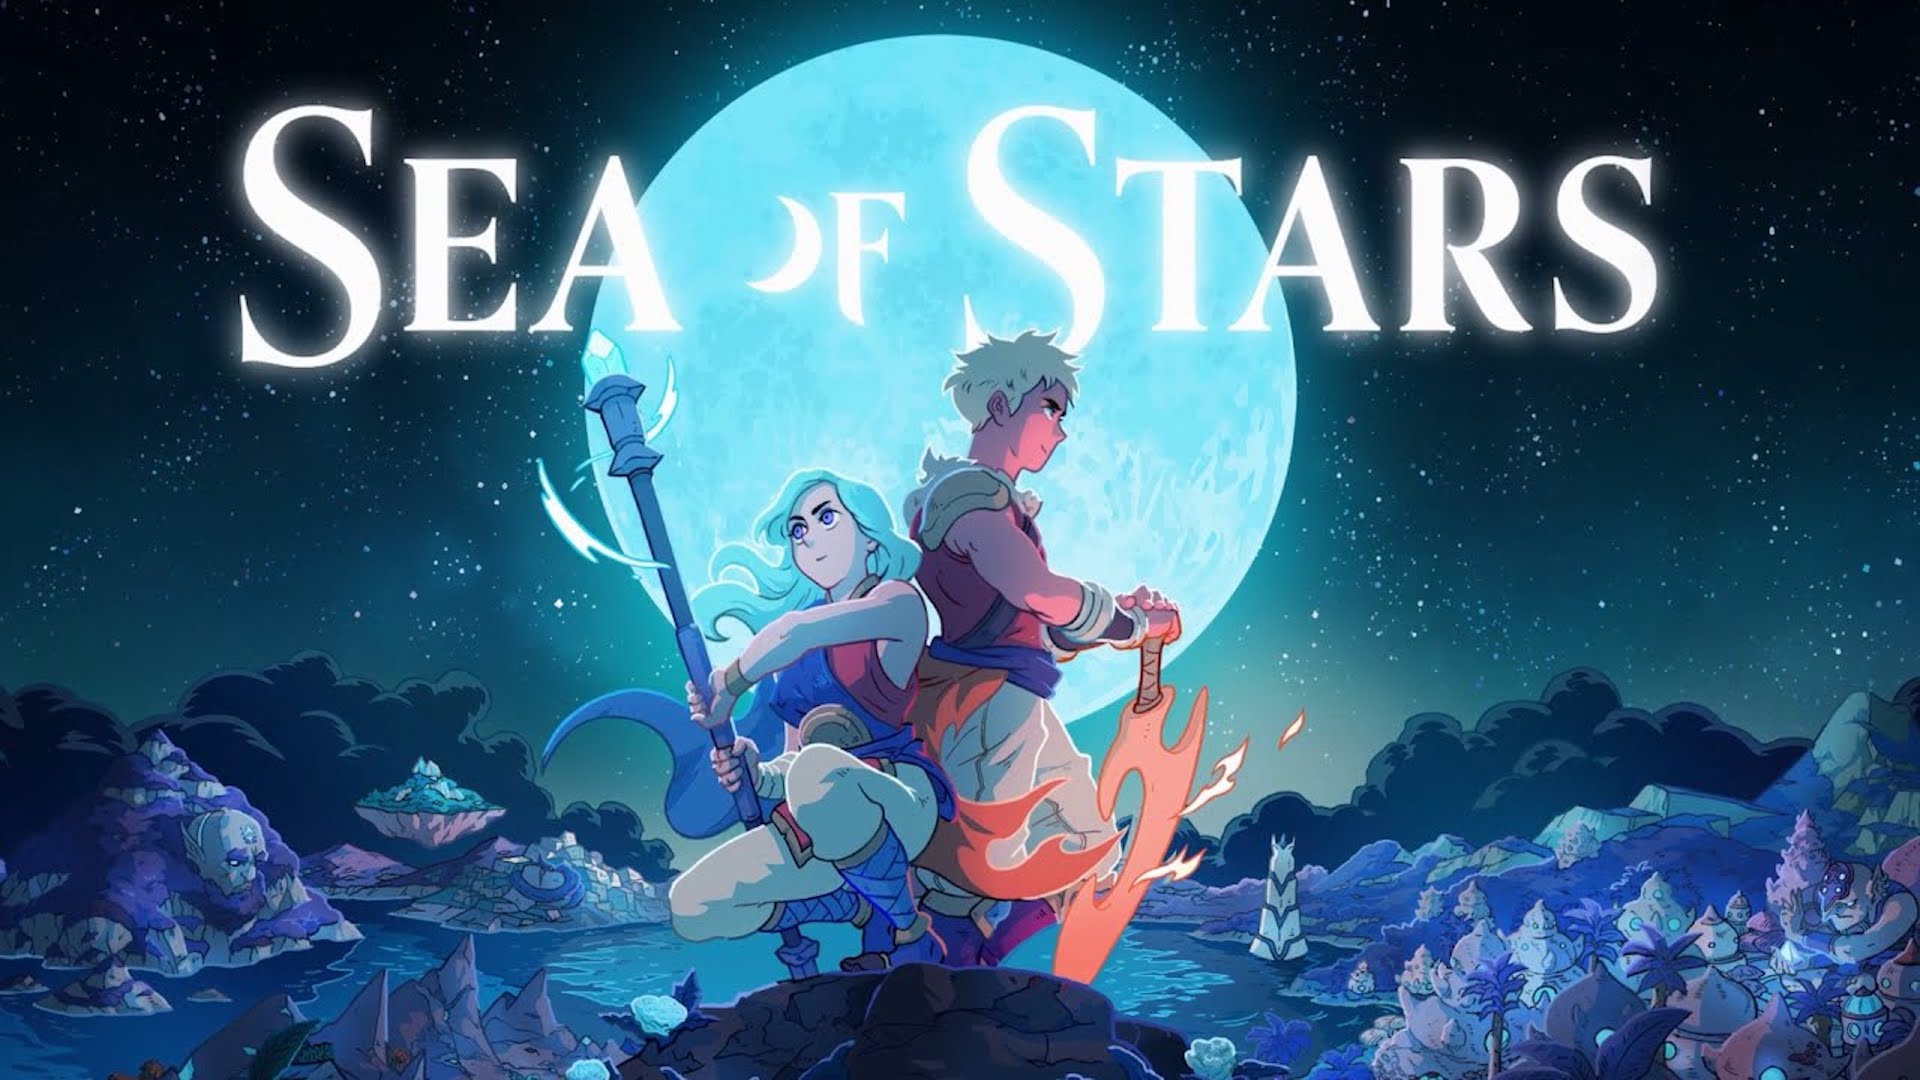 Opublikowano nowy zwiastun Sea of Stars, ujawniający nową postać